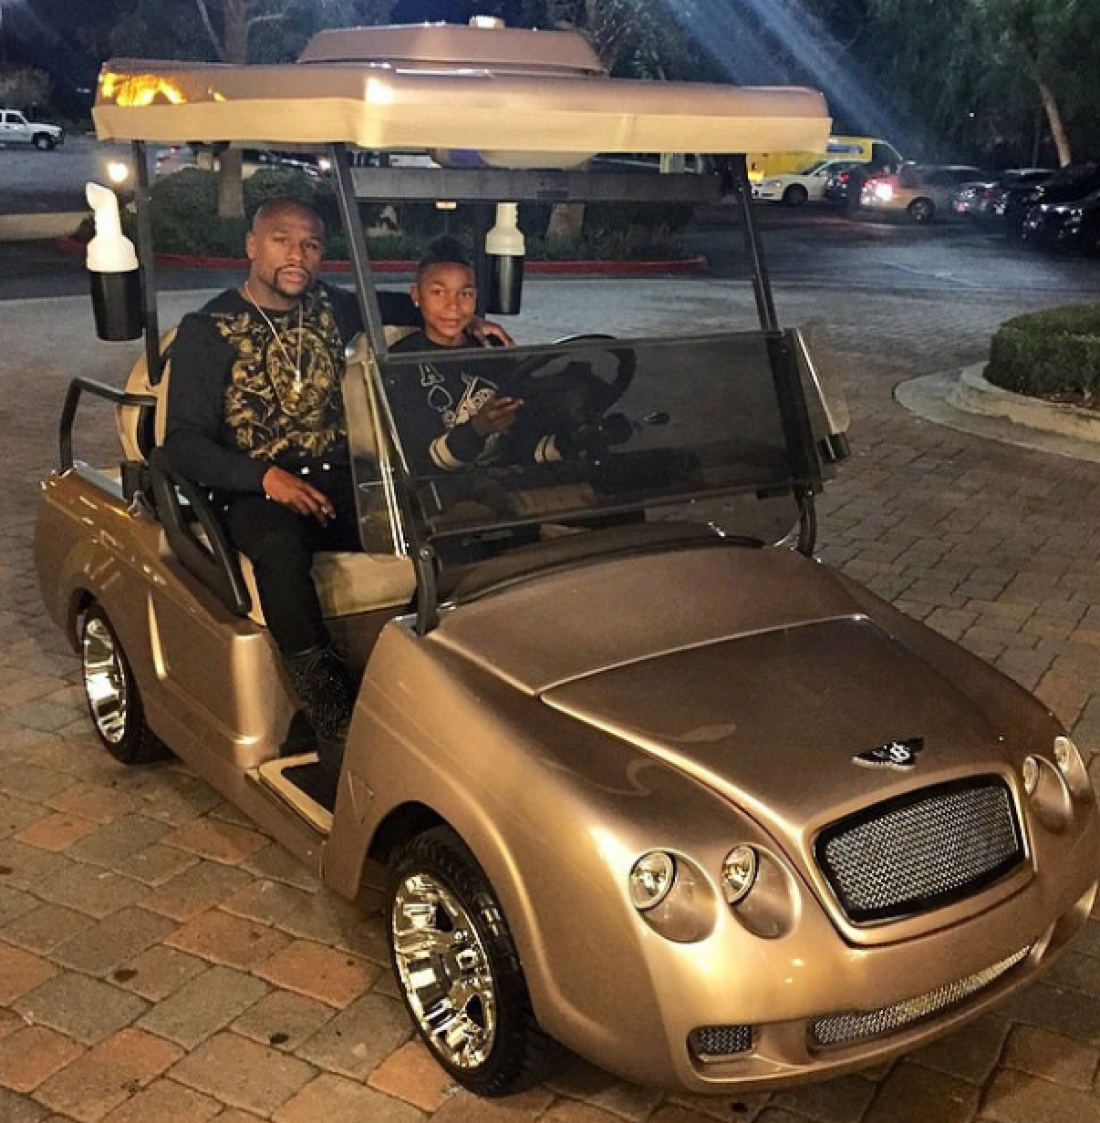 Флойд Мейвезер подарил сыну золотой гольф-кар на прошлый день рождения